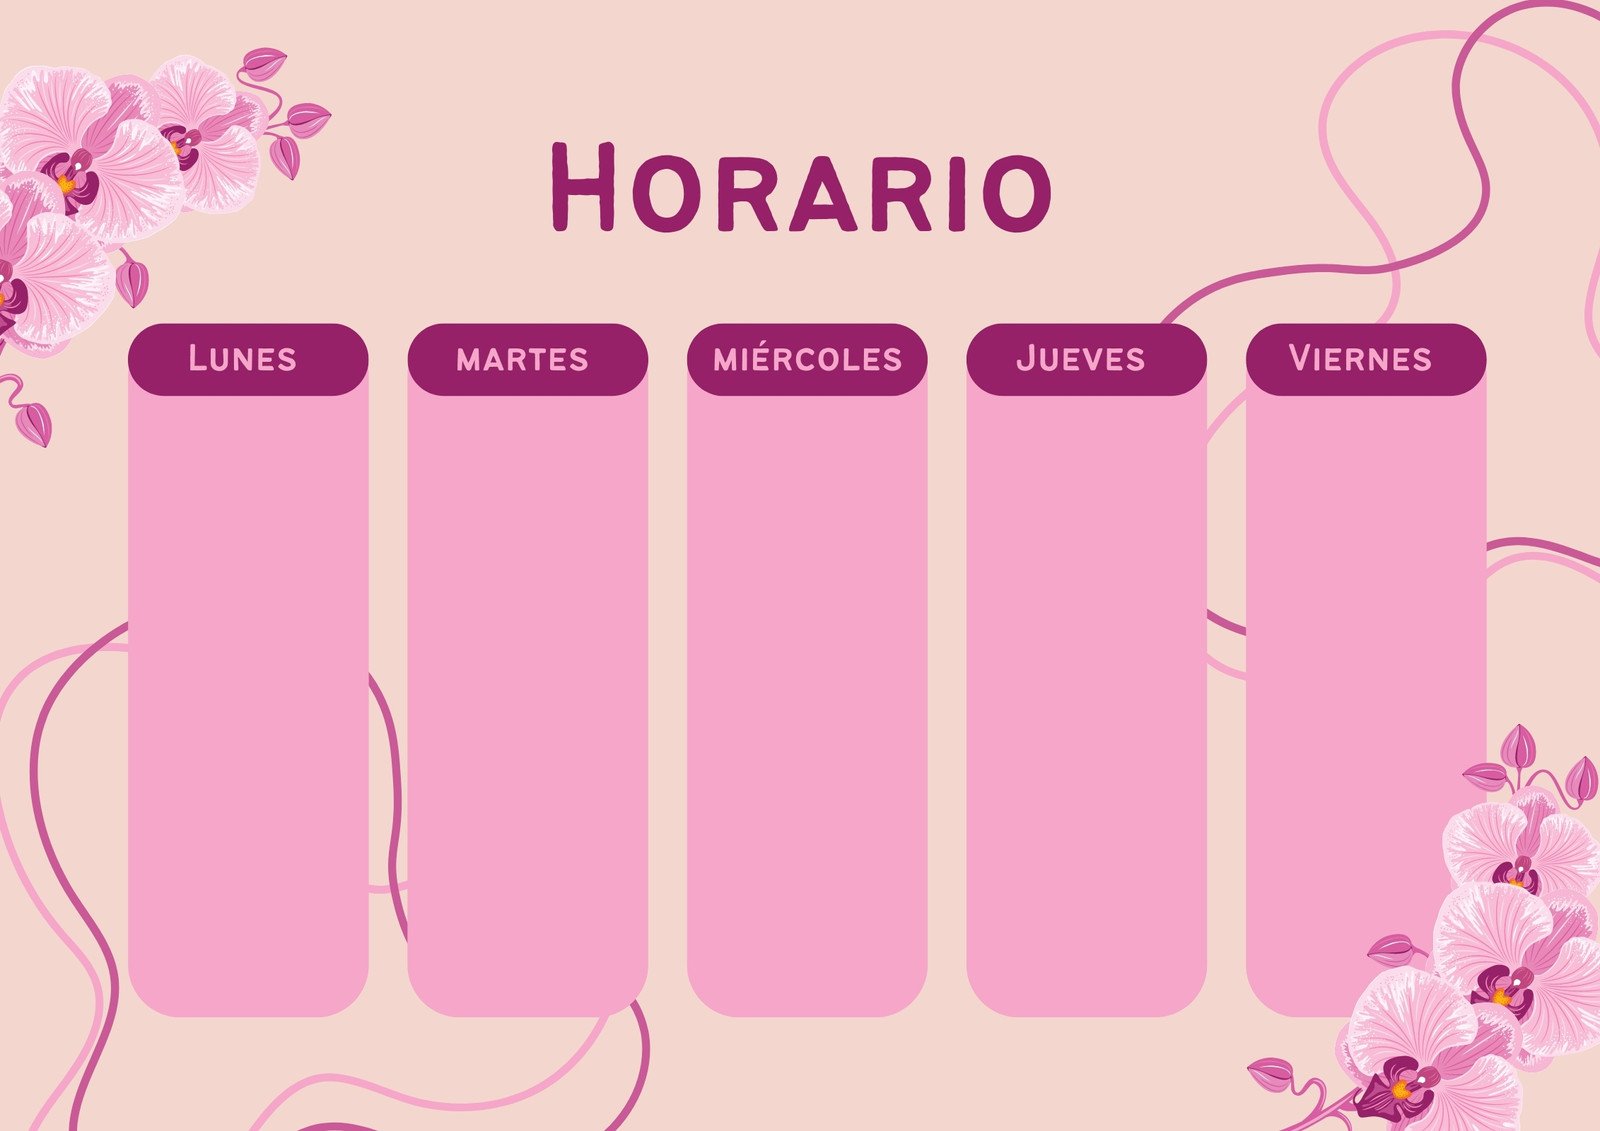 horario orquideas floral rosa